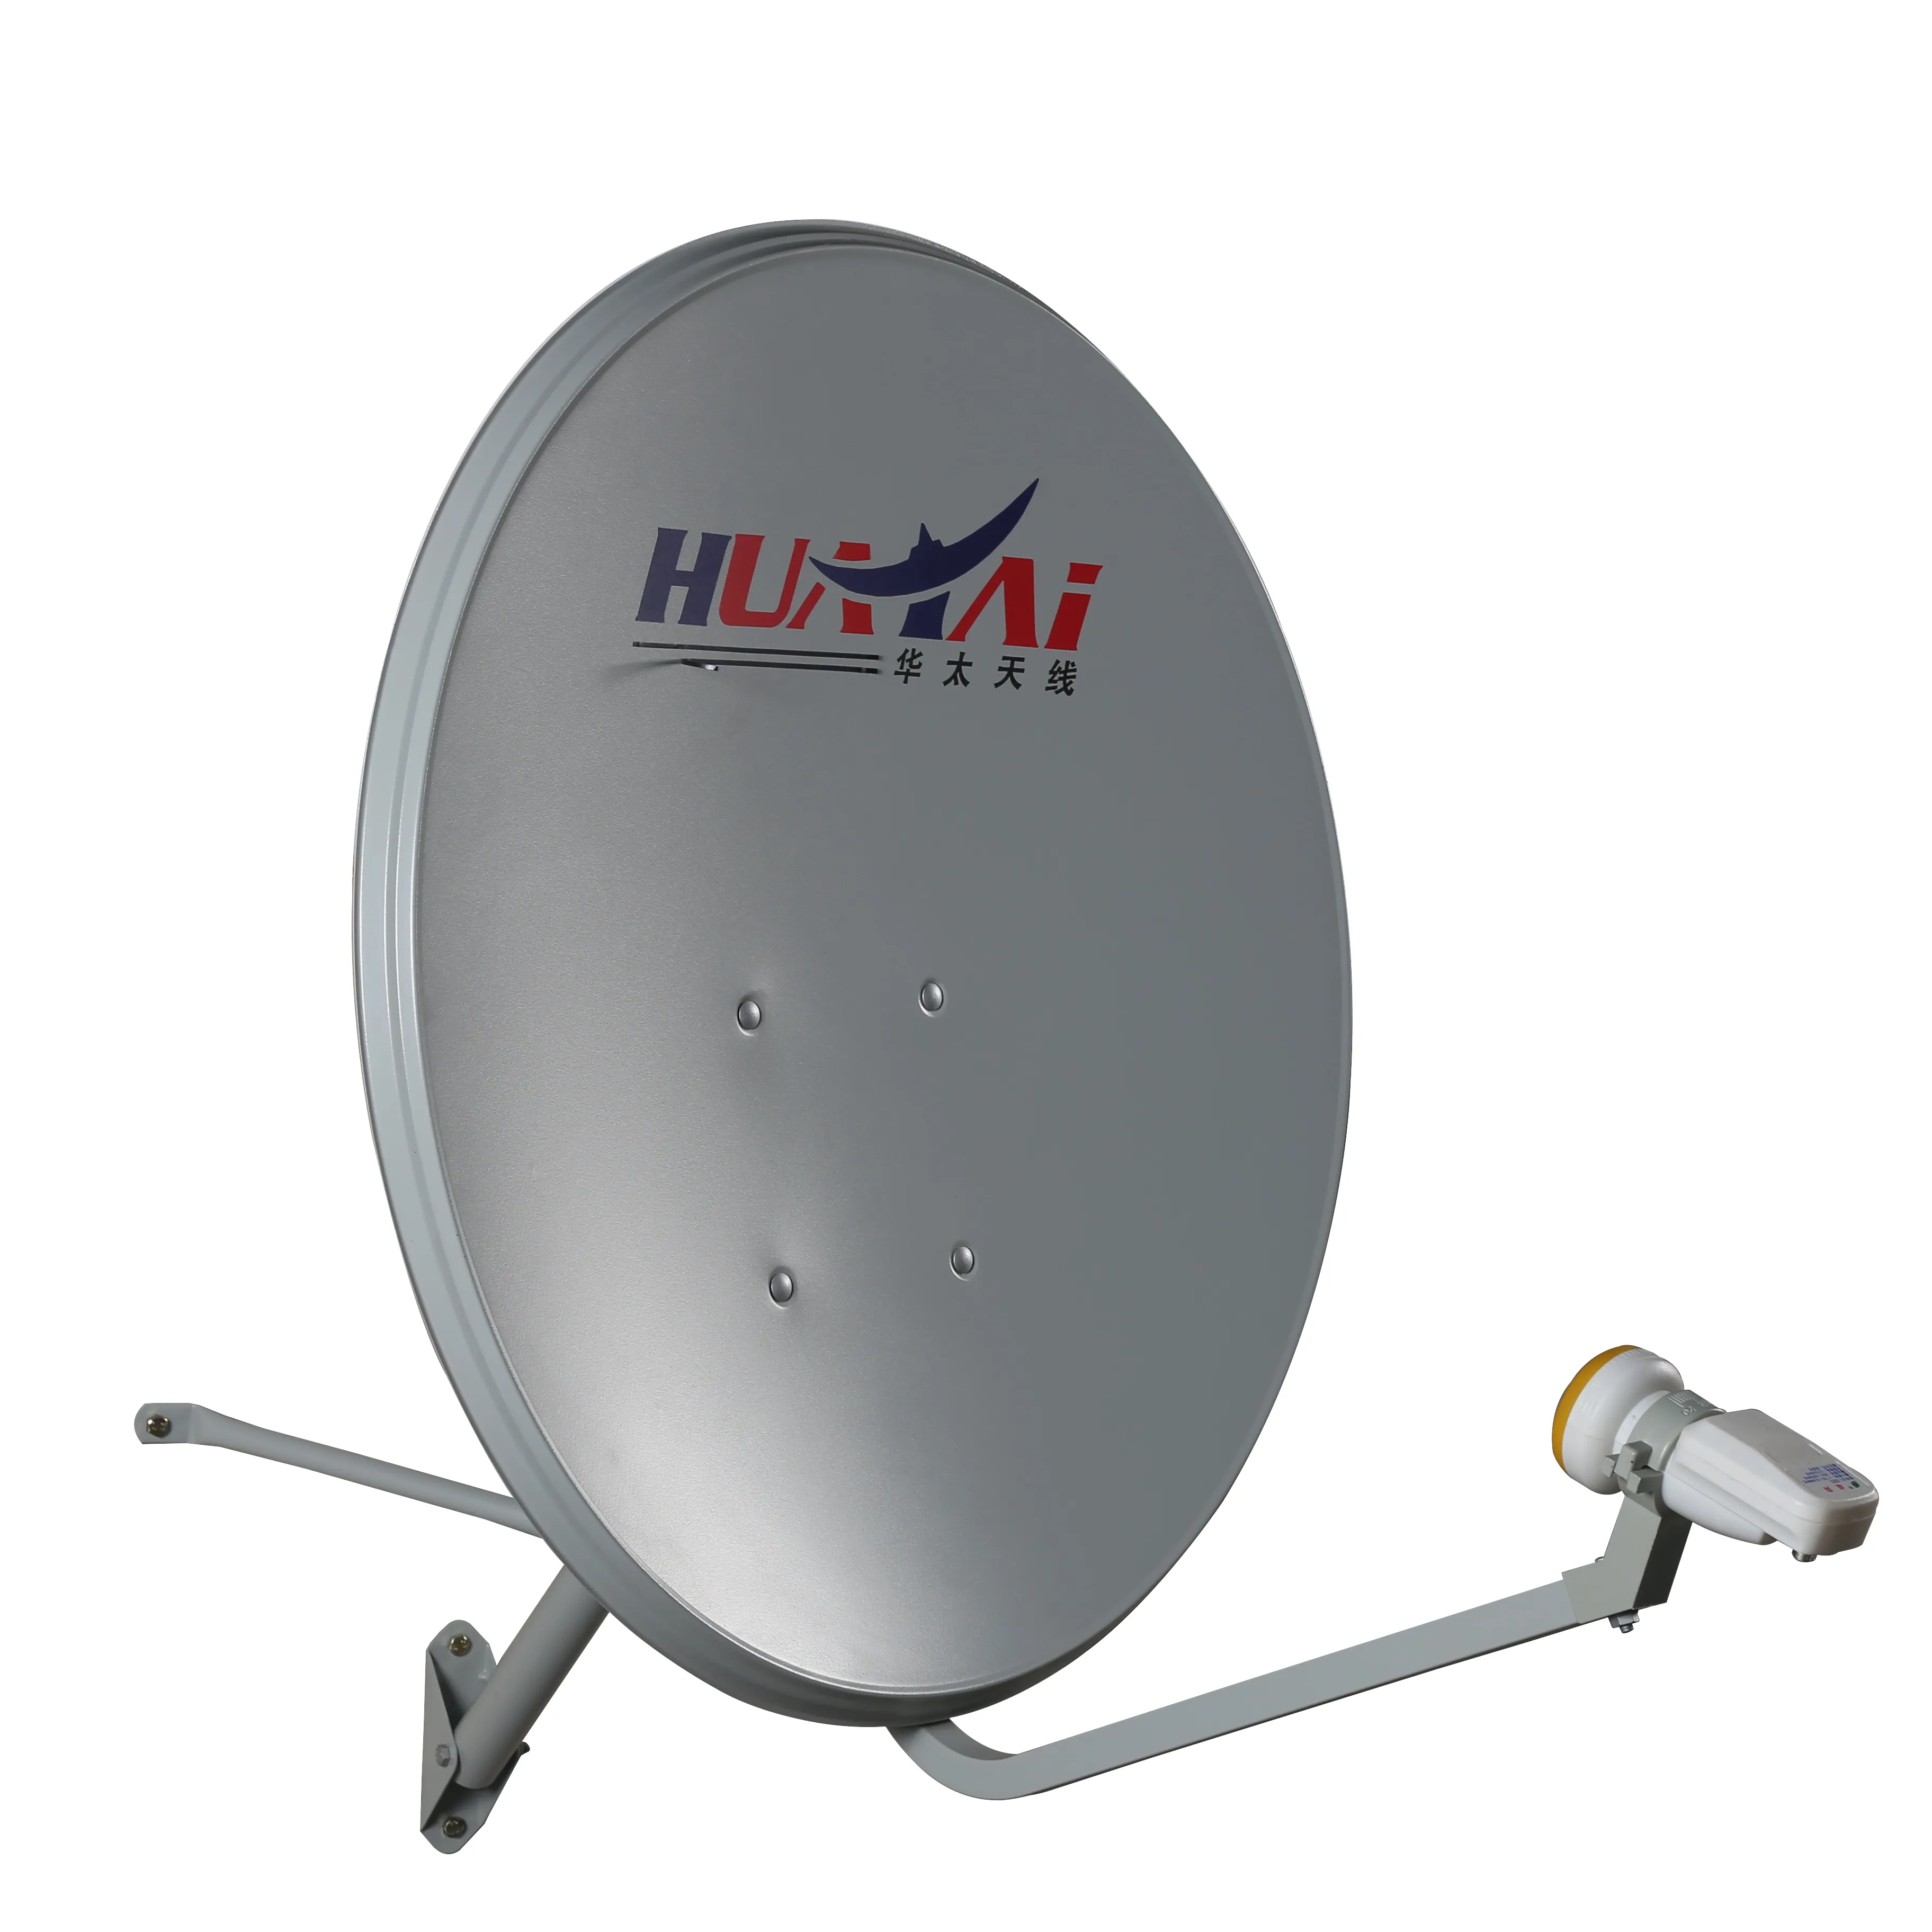 Outdoor Tipe TV Satelit Dish Antenna dengan Harga Murah Kualitas Tinggi